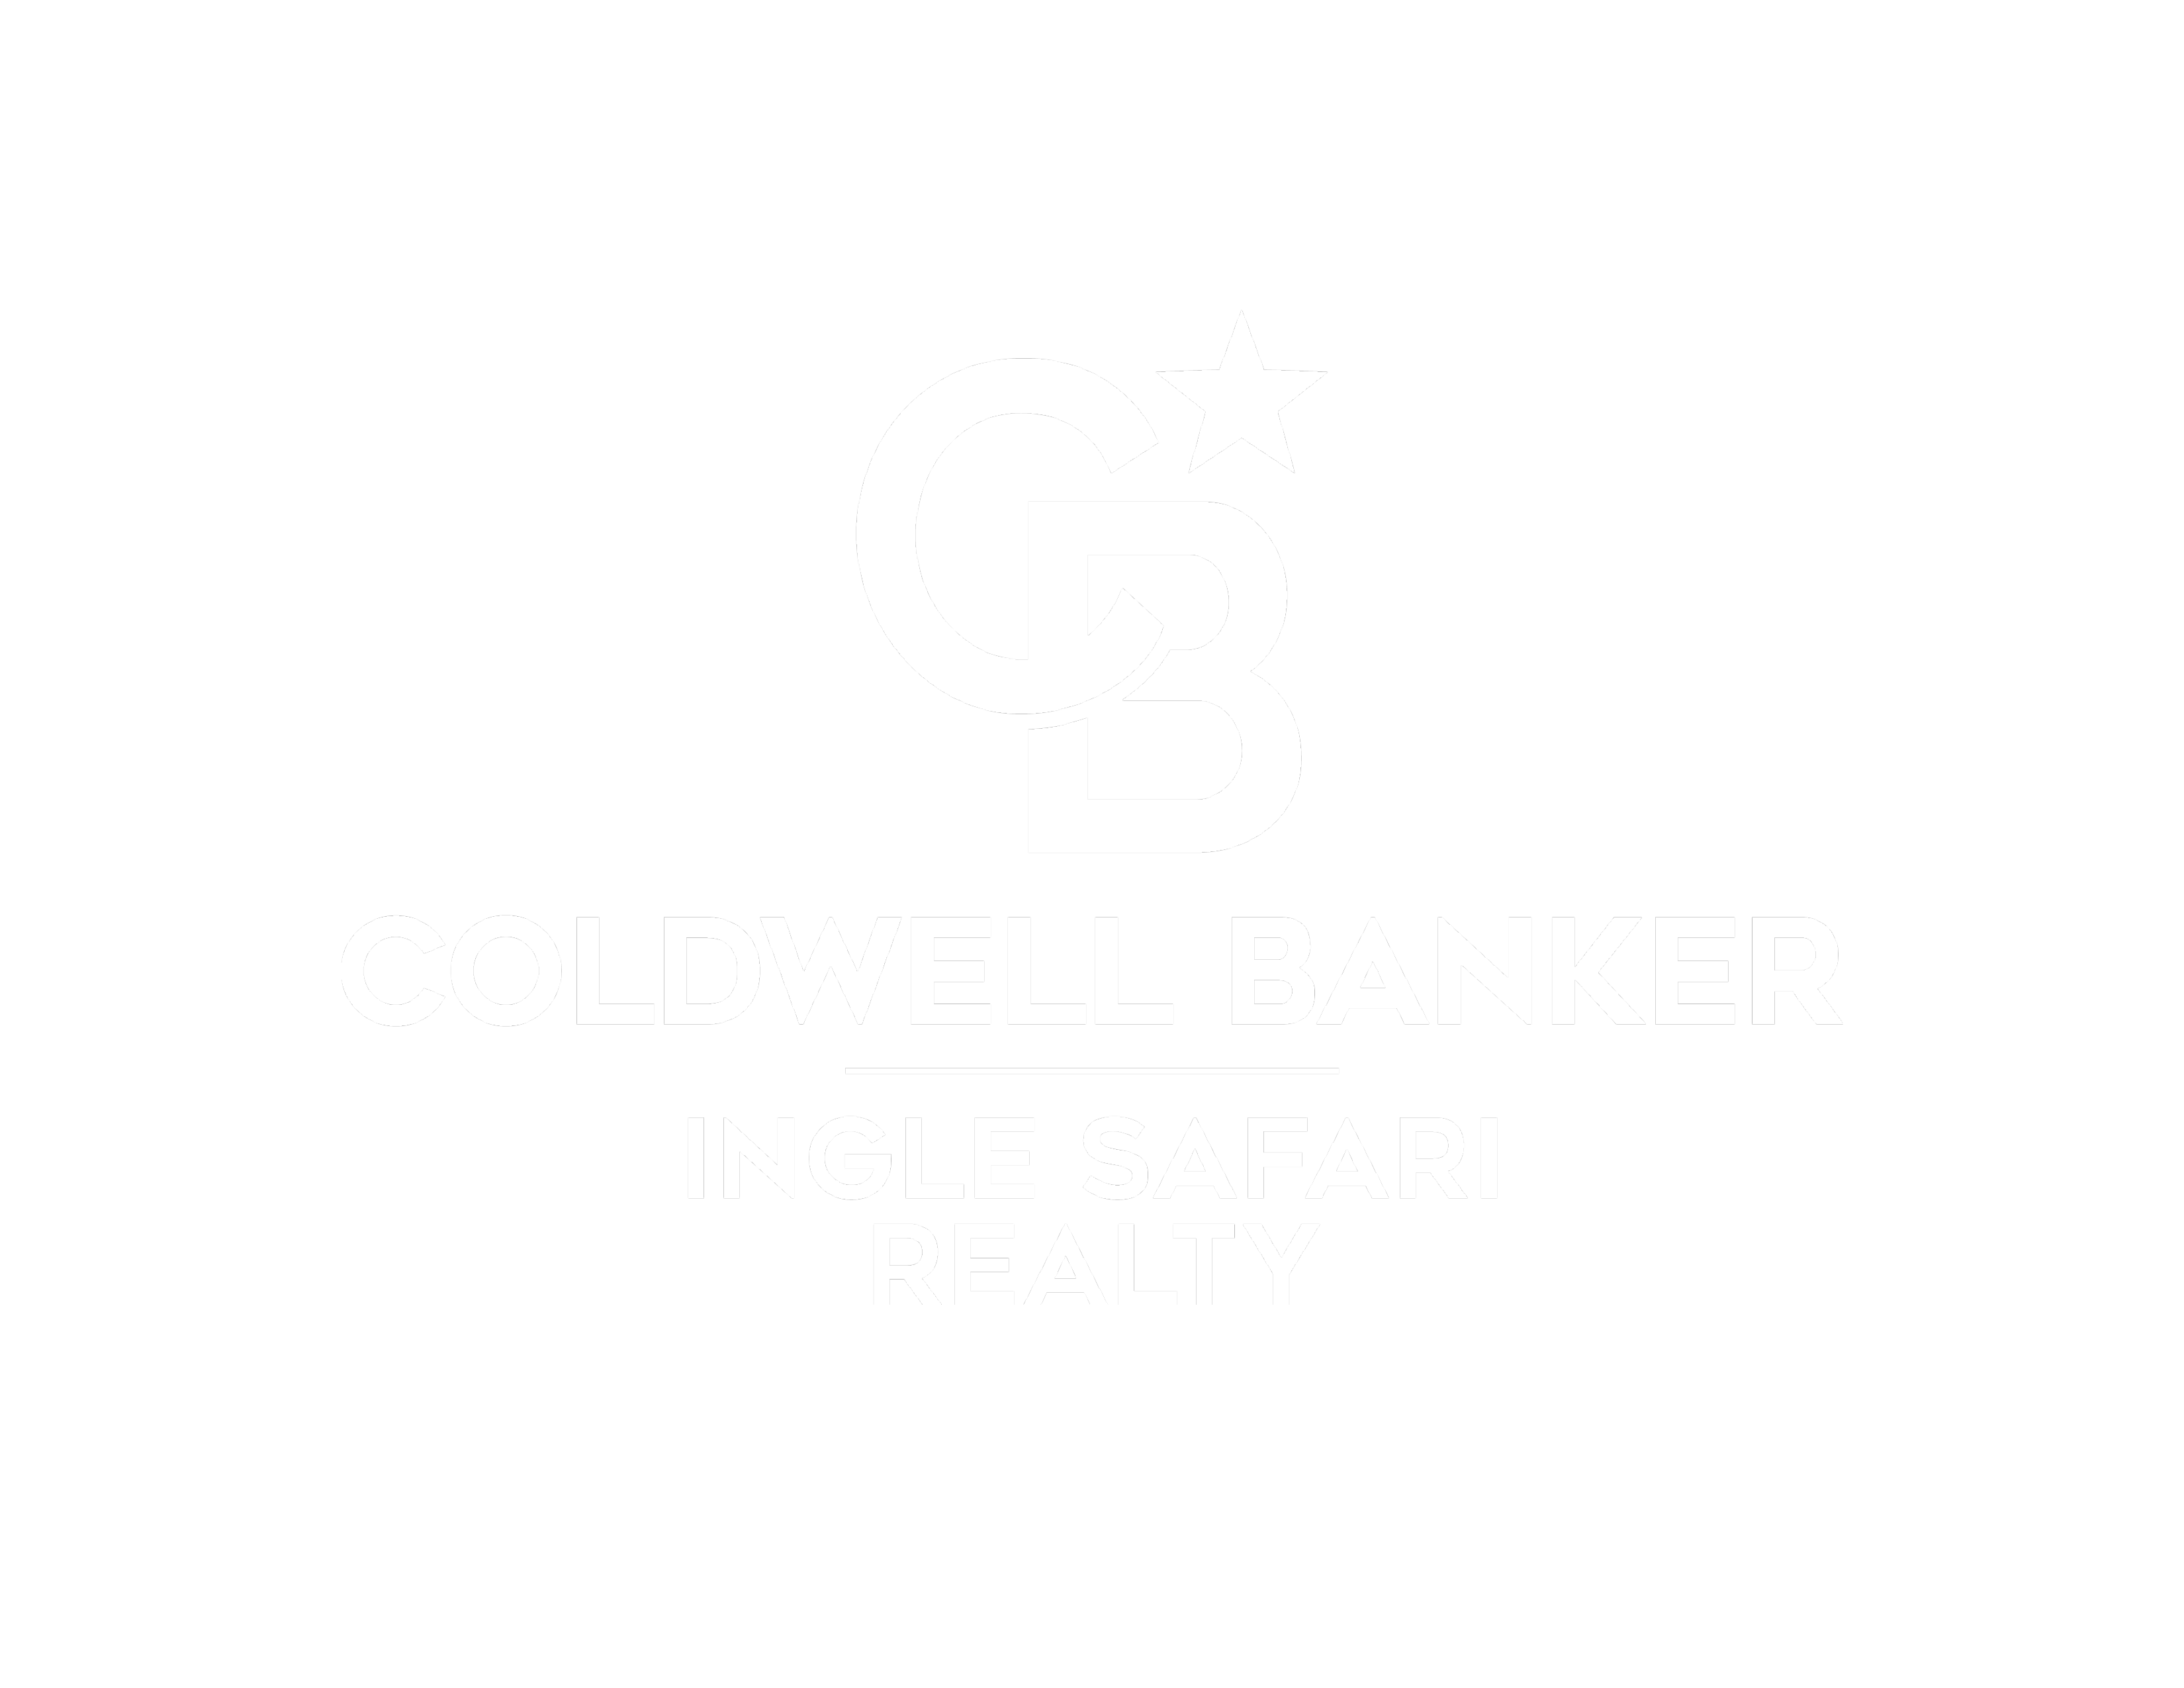 Coldwell Banker Ingle Safari Realty